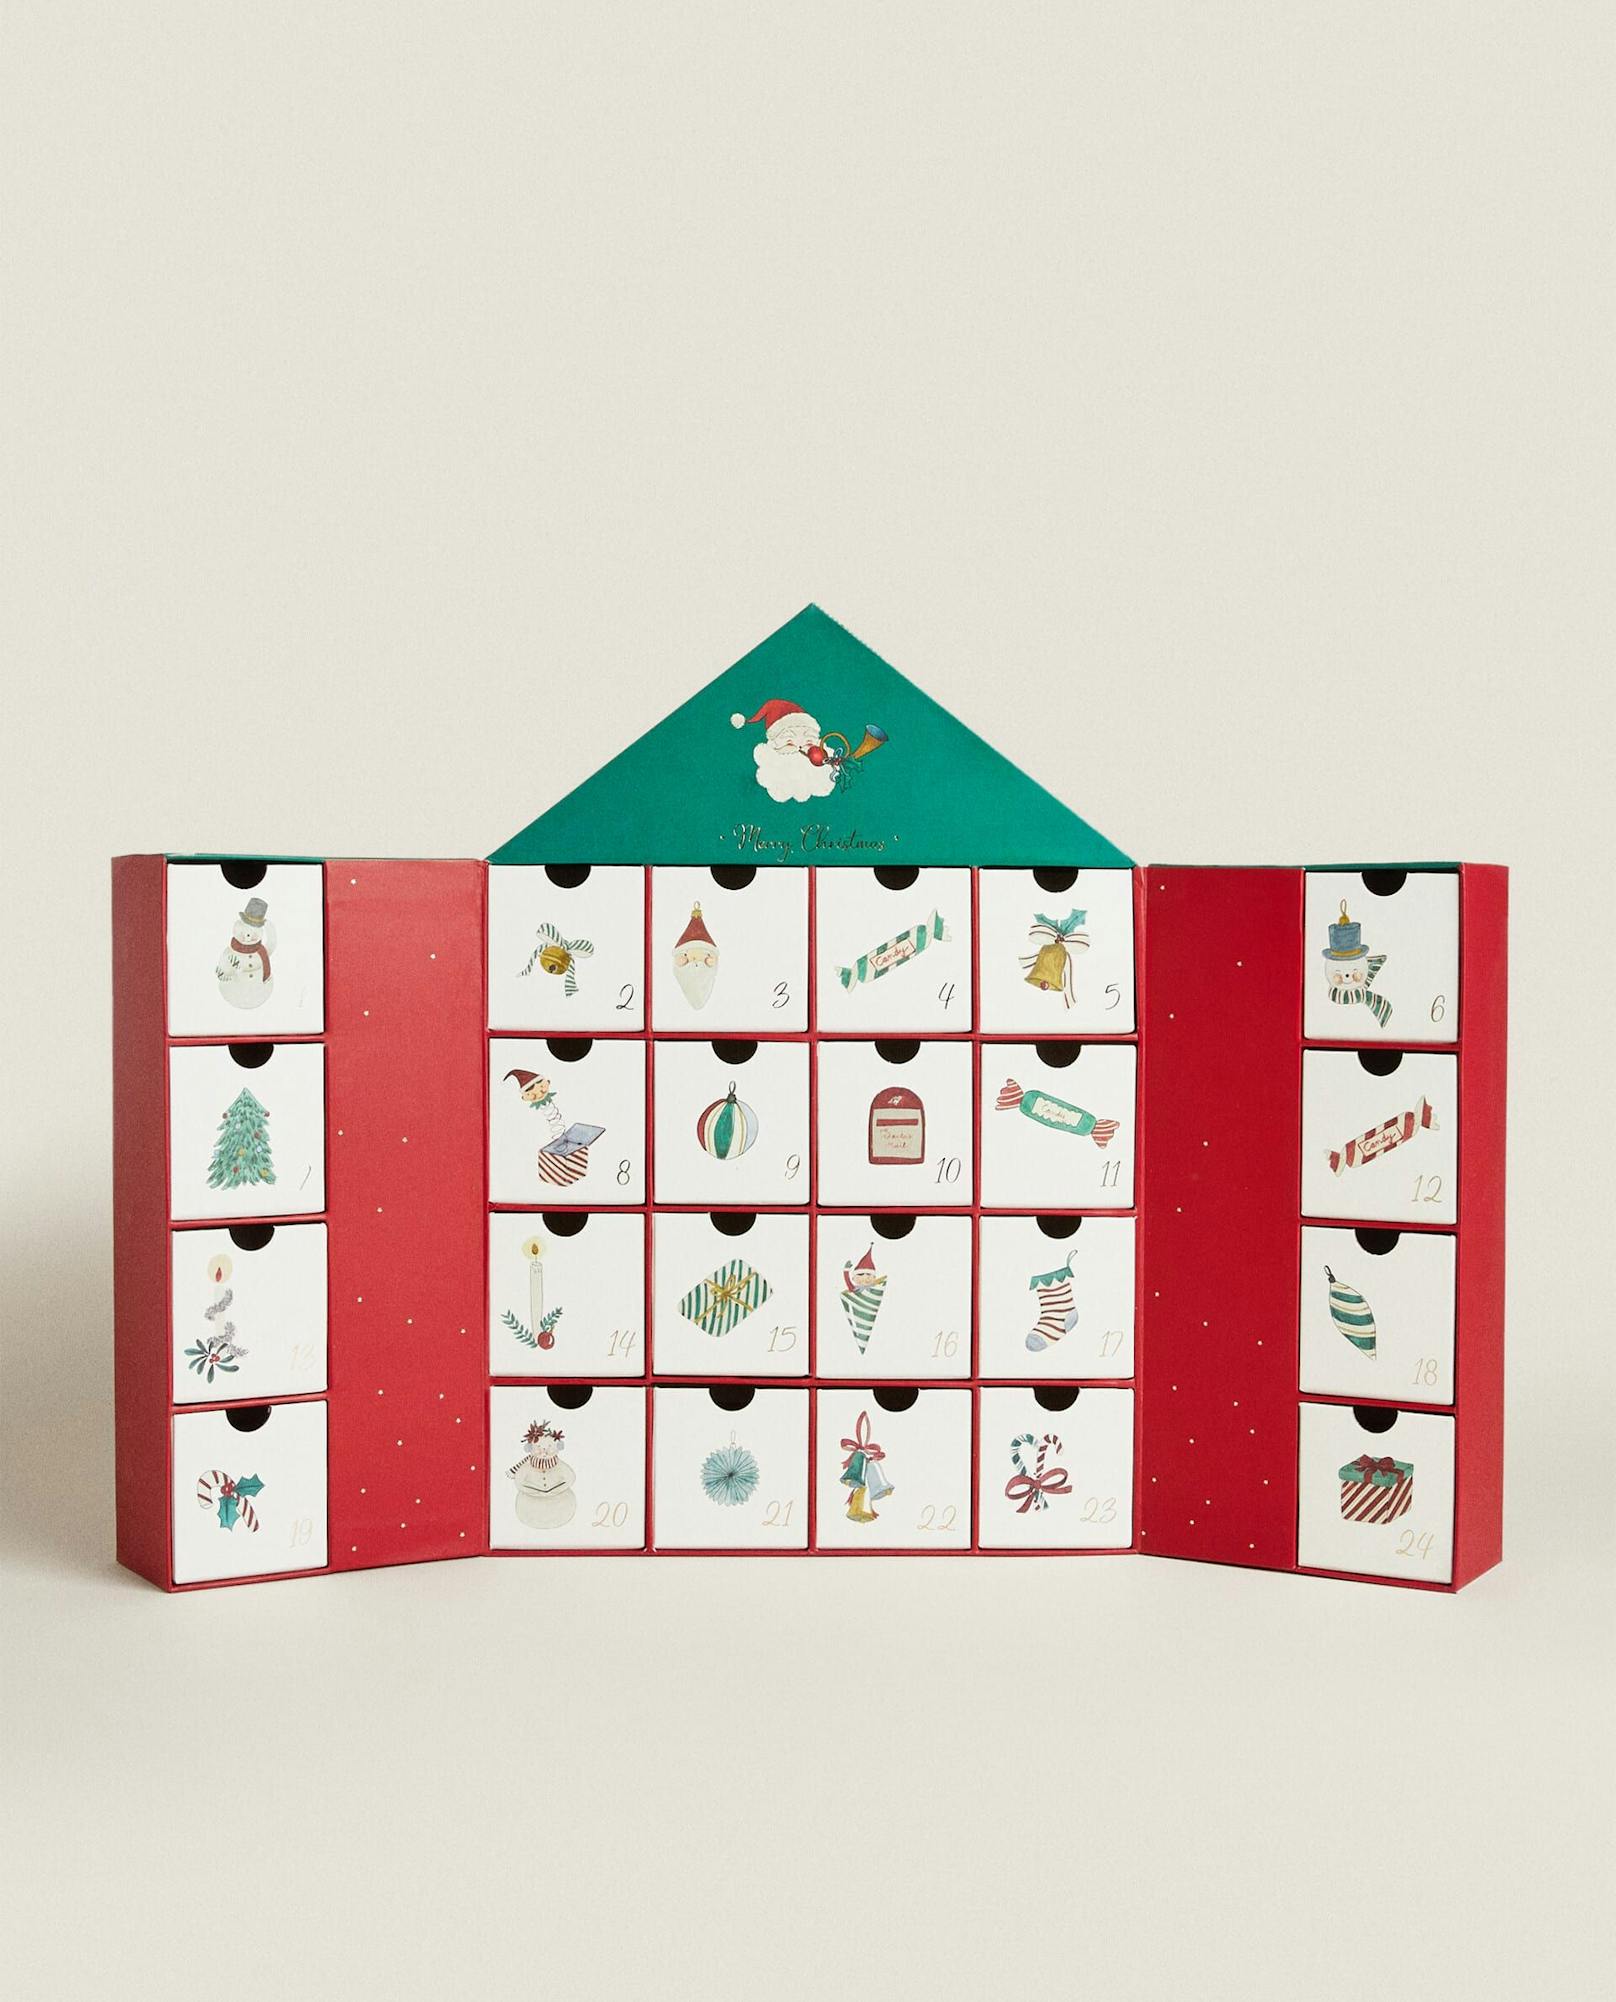 Verspielter Adventkalender in Häuschenform aus Holz mit süßen Motiven. Zu finden bei <a href="https://www.zarahome.com/at/adventskalender-in-h%C3%A4uschenform-c0p327079876.html?colorId=999&amp;srch=true">Zara Home</a> um 39,99 Euro.